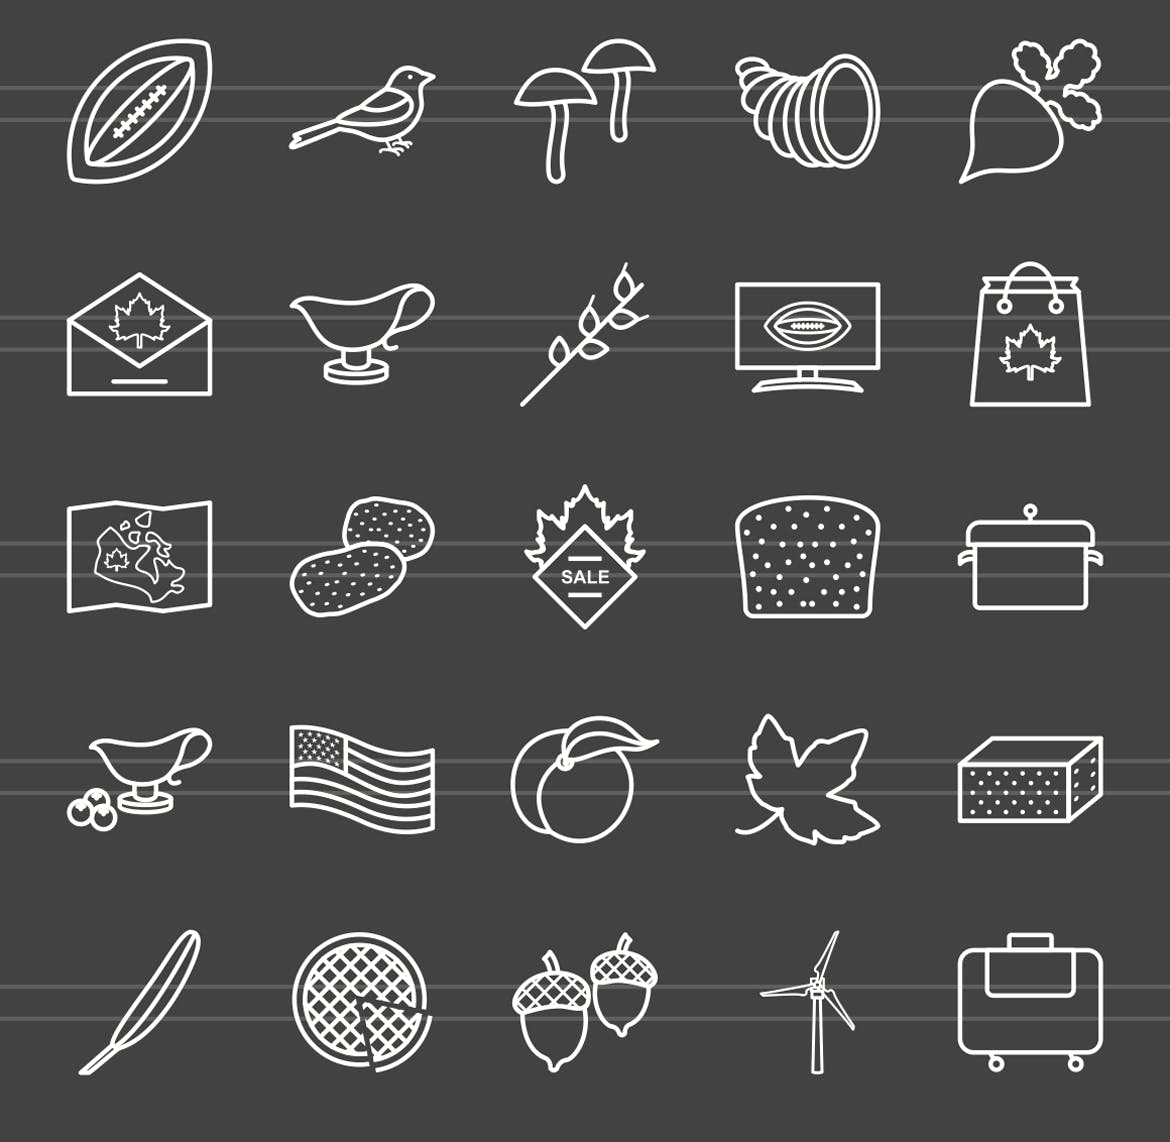 50枚感恩节主题反转色矢量线性蚂蚁素材精选图标 50 Thanksgiving Line Inverted Icons插图(2)